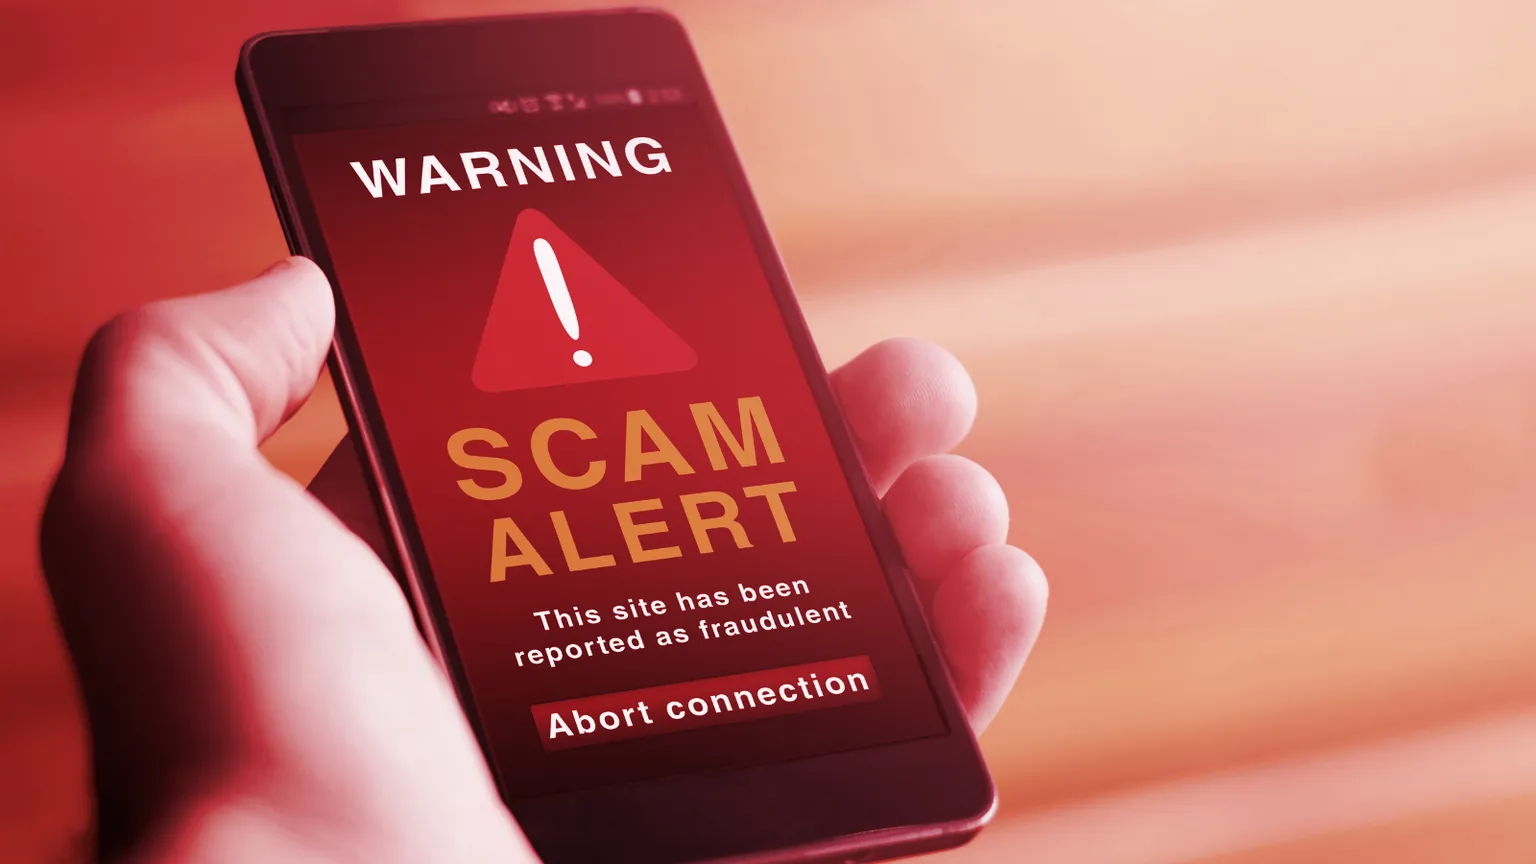 Scam alert. Image: Shutterstock